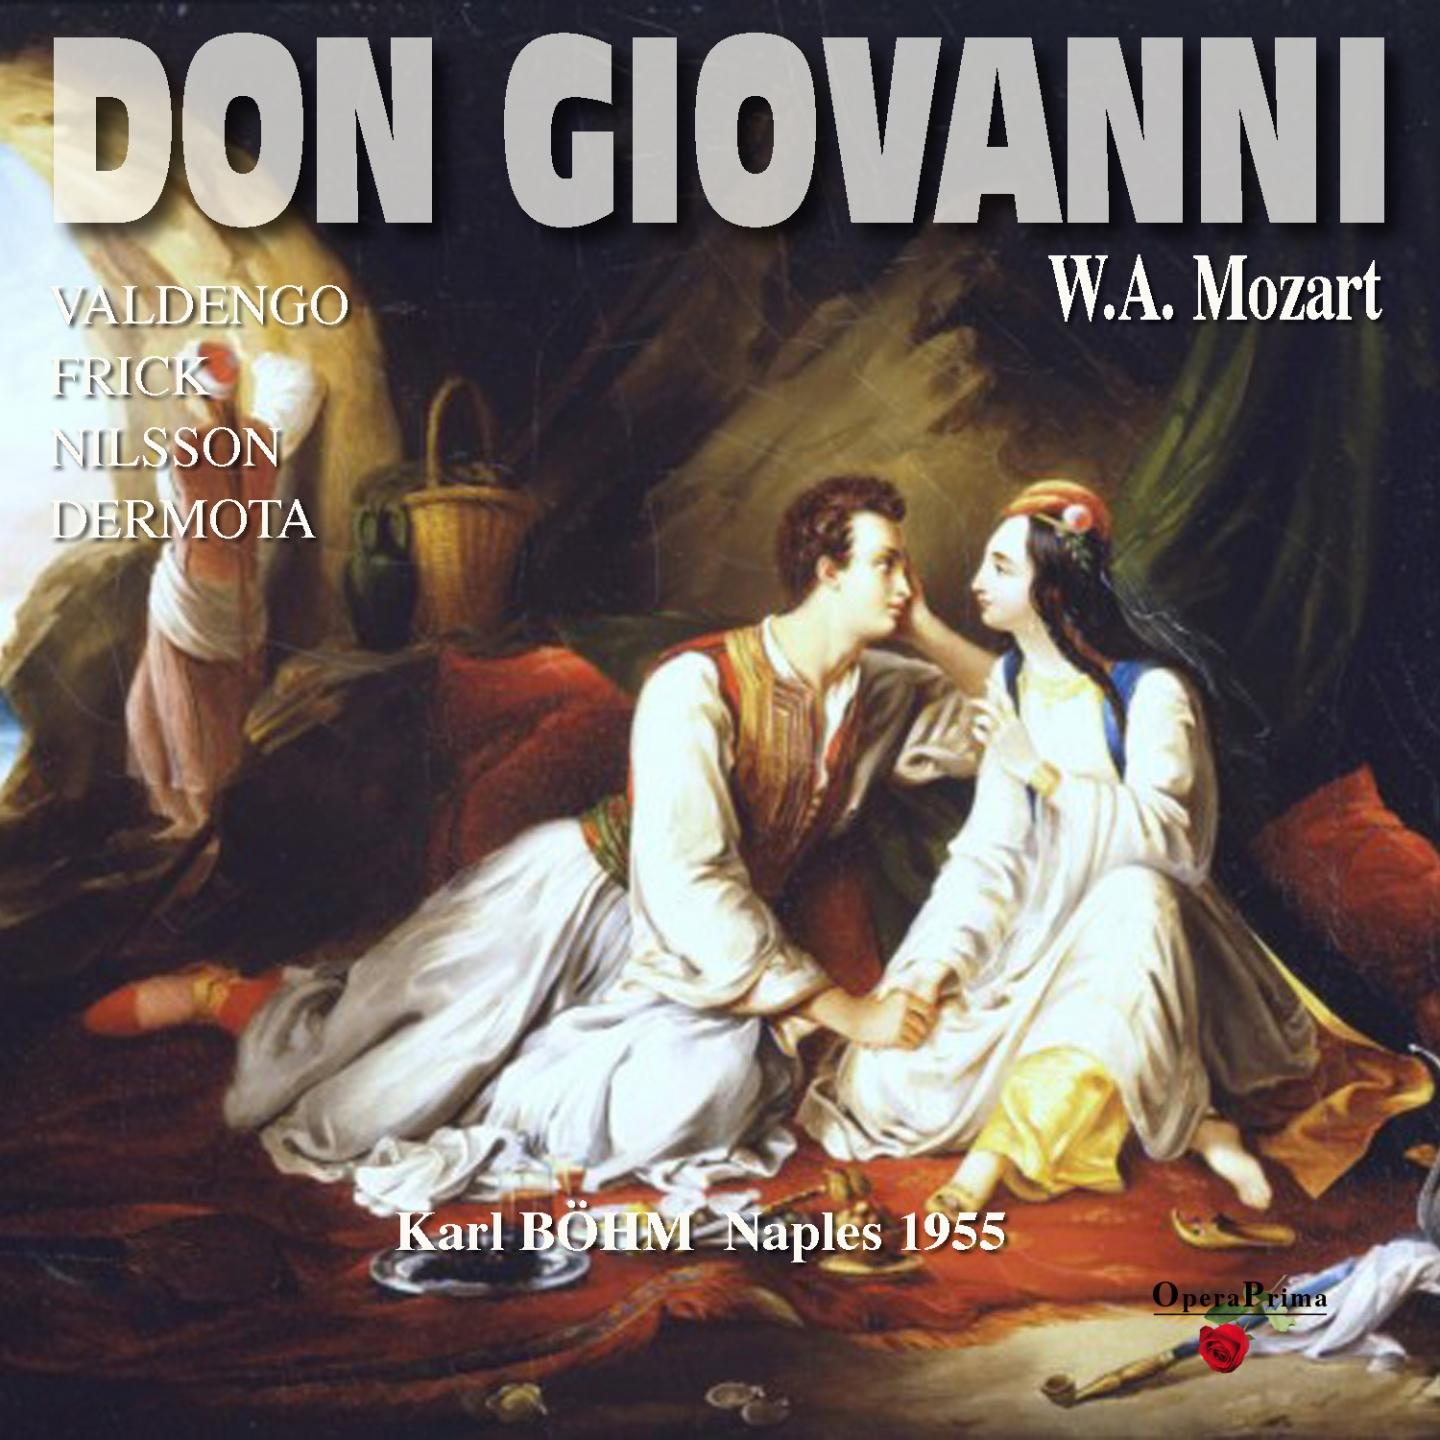 Don Giovanni: Act II - "Deh vieni alla finestra"